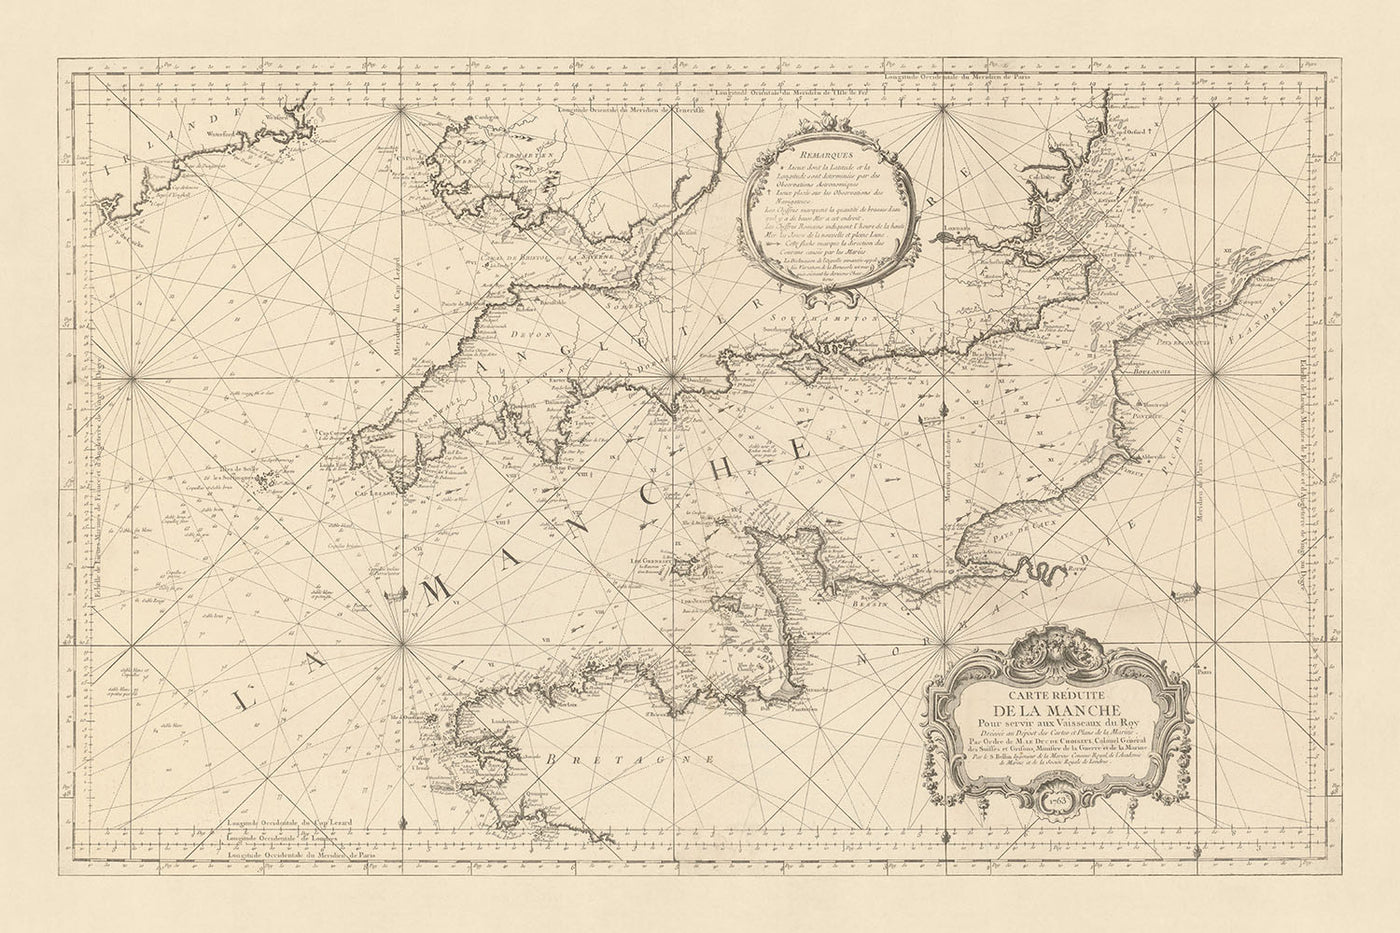 Antiguo mapa naval del Canal de la Mancha por Bellin, 1763: Canal de la Mancha, Londres, París, Isla de Wight, Faro de Eddystone